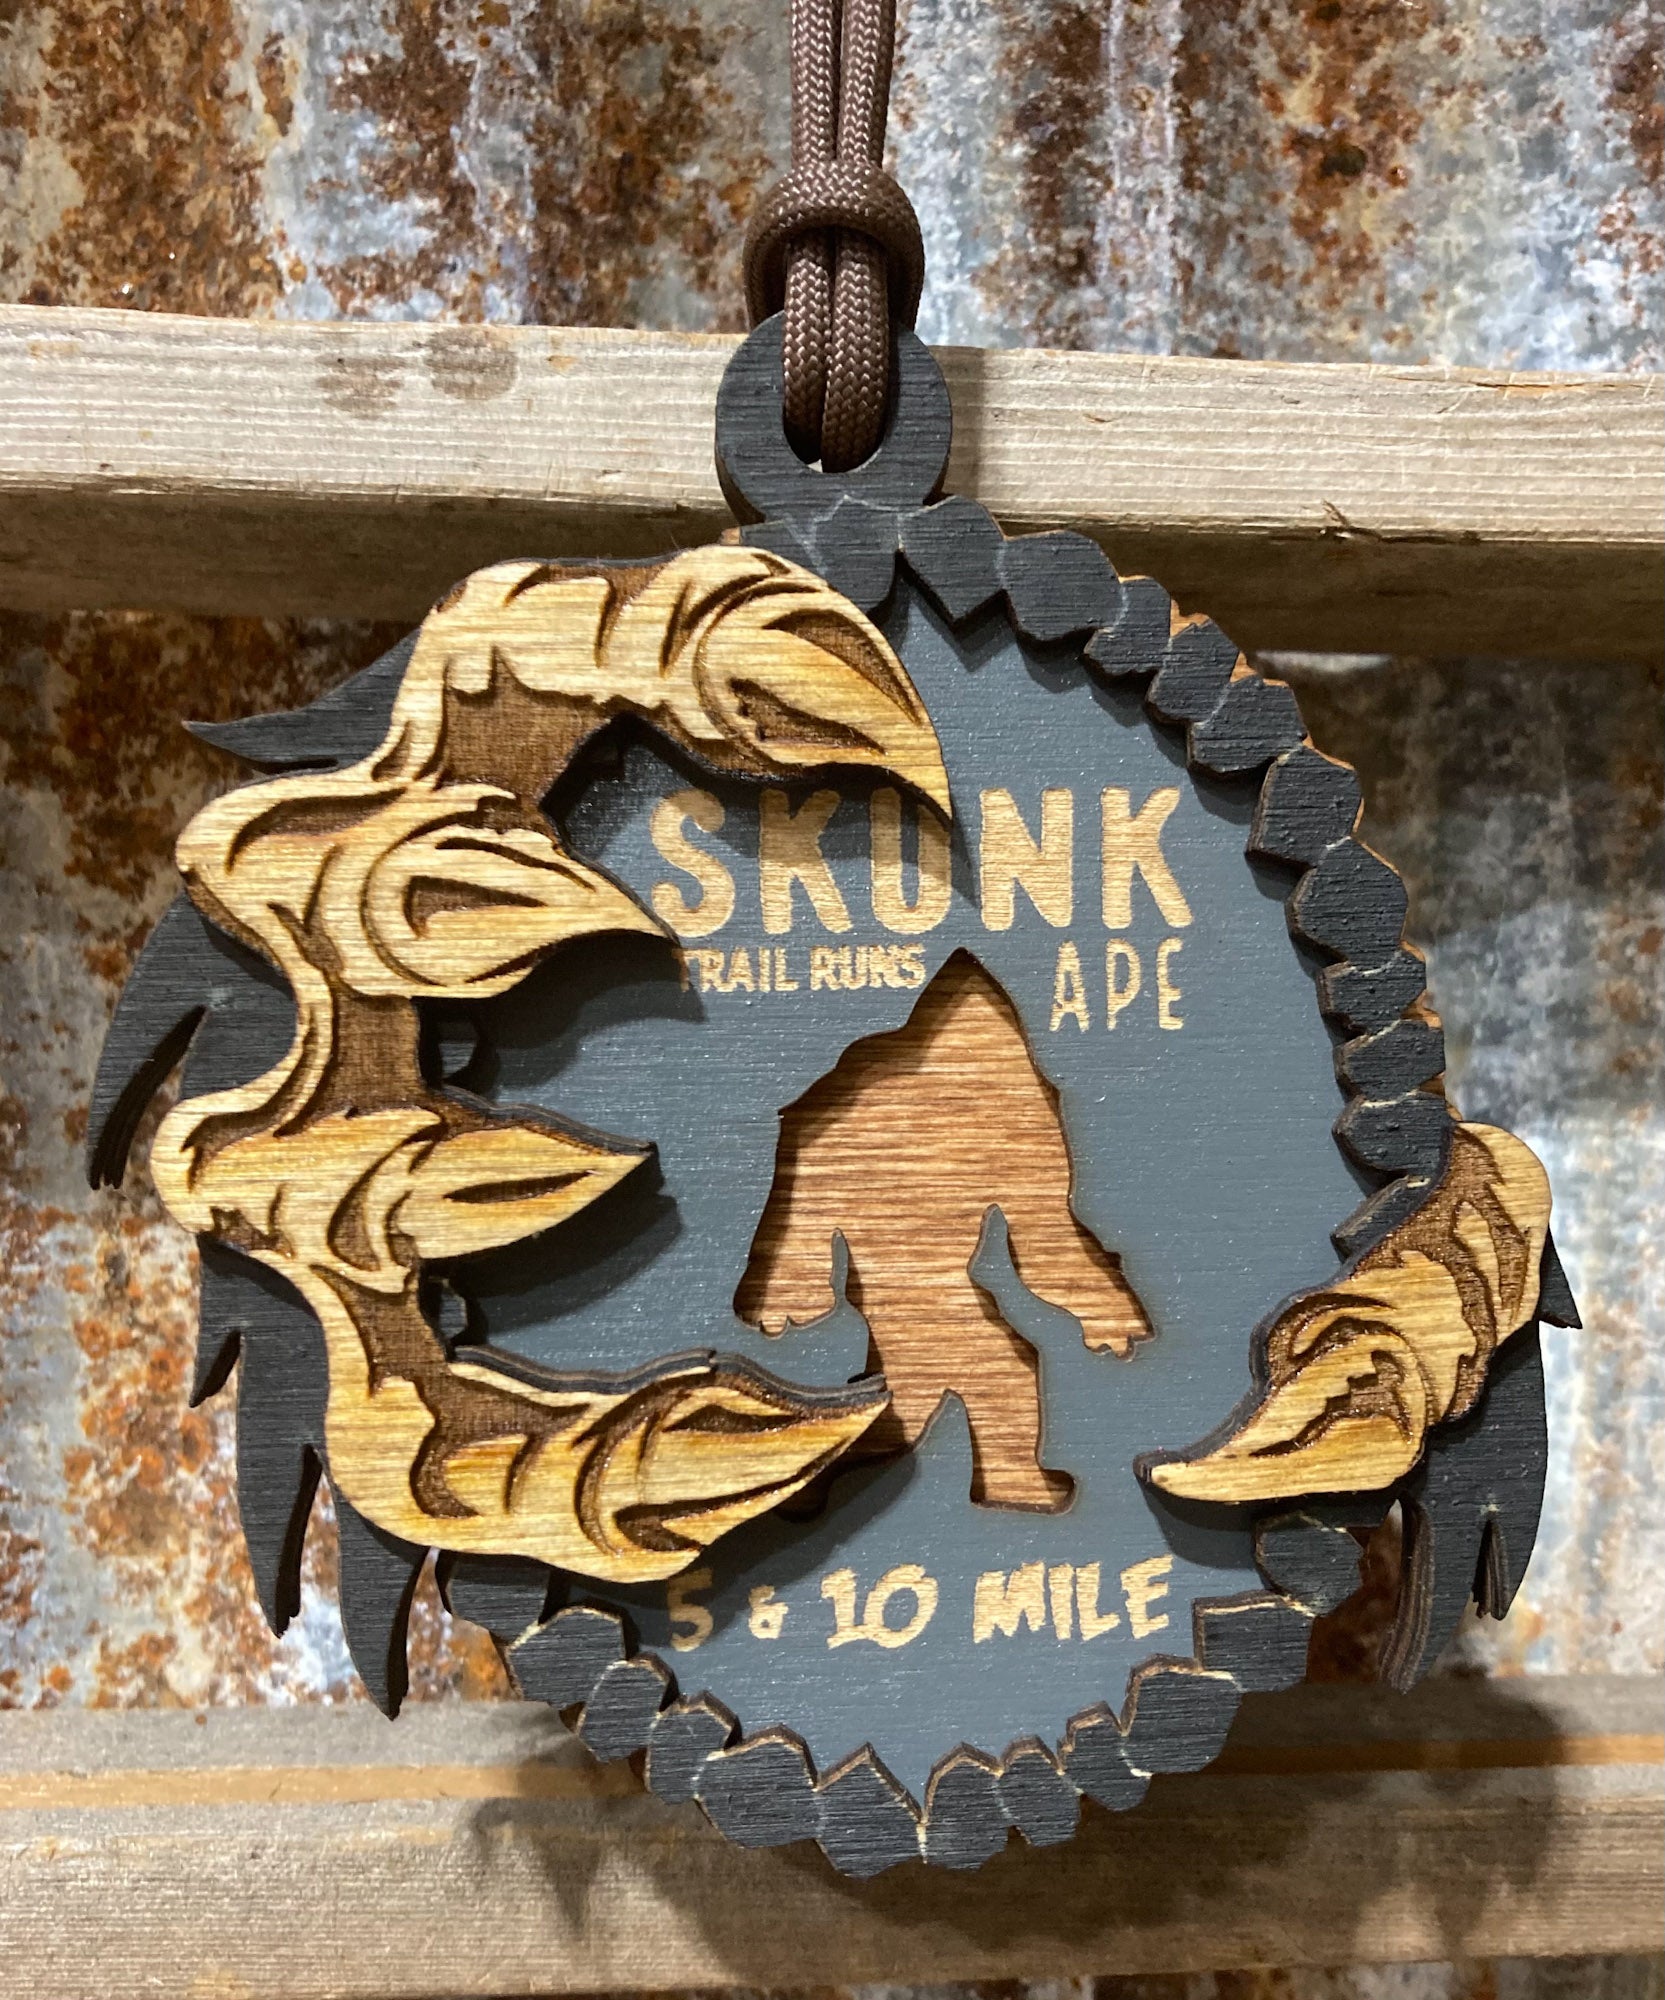 Skunk Ape Medal 